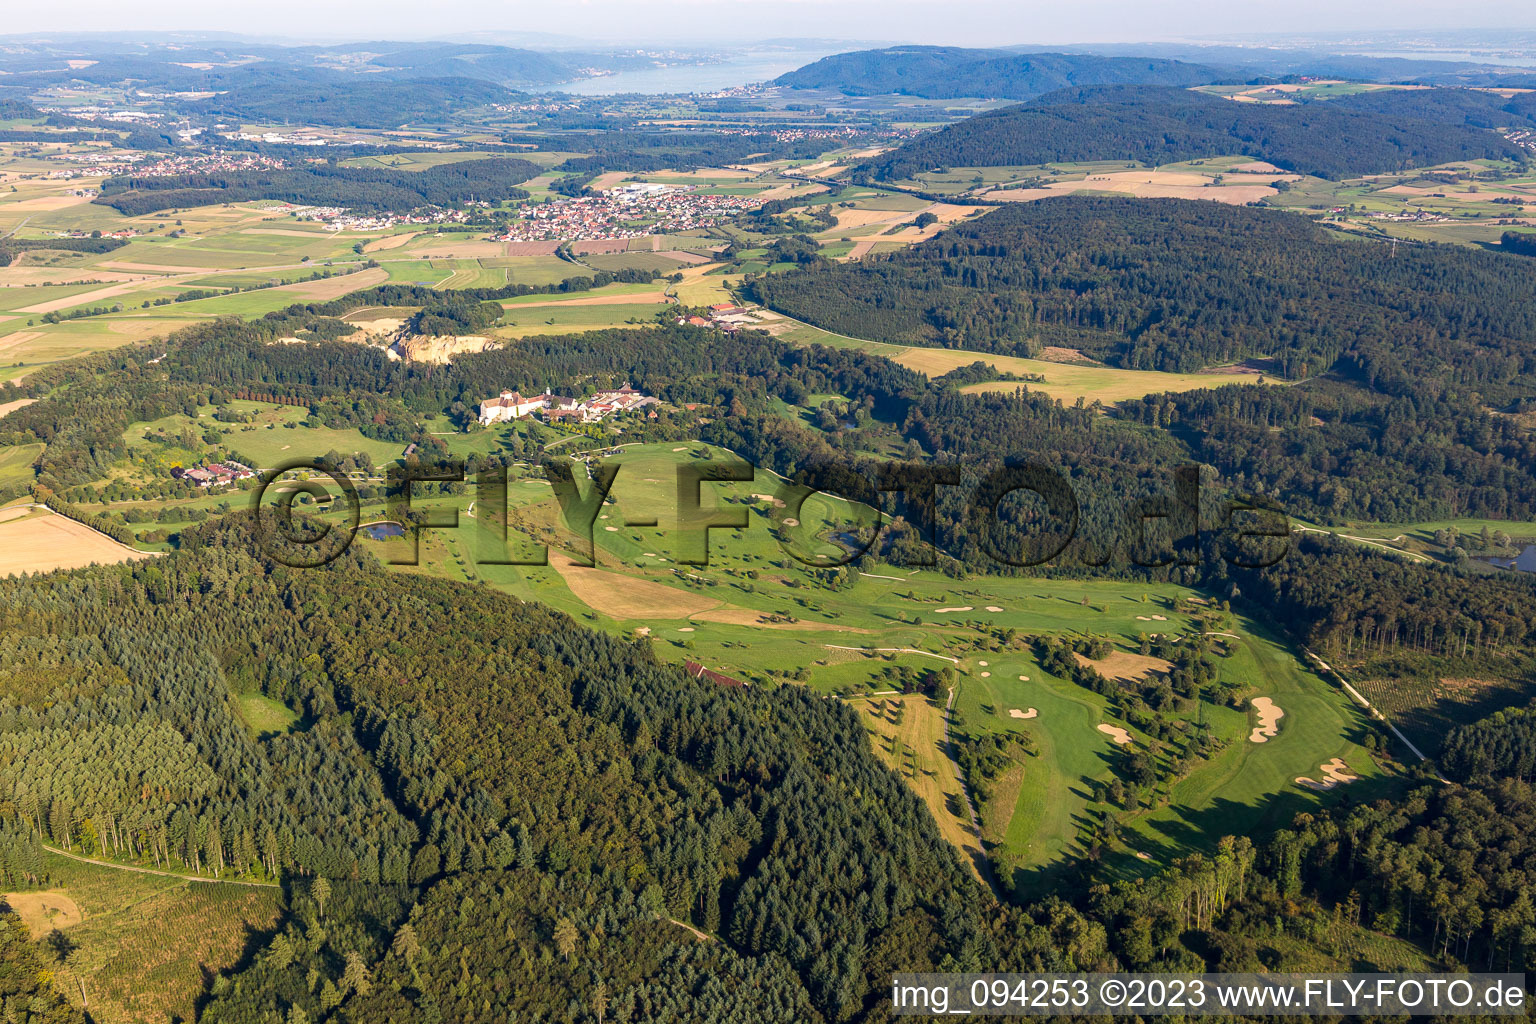 Vue aérienne de Château de Langenstein, terrain de golf The Country Club à Orsingen-Nenzingen dans le département Bade-Wurtemberg, Allemagne